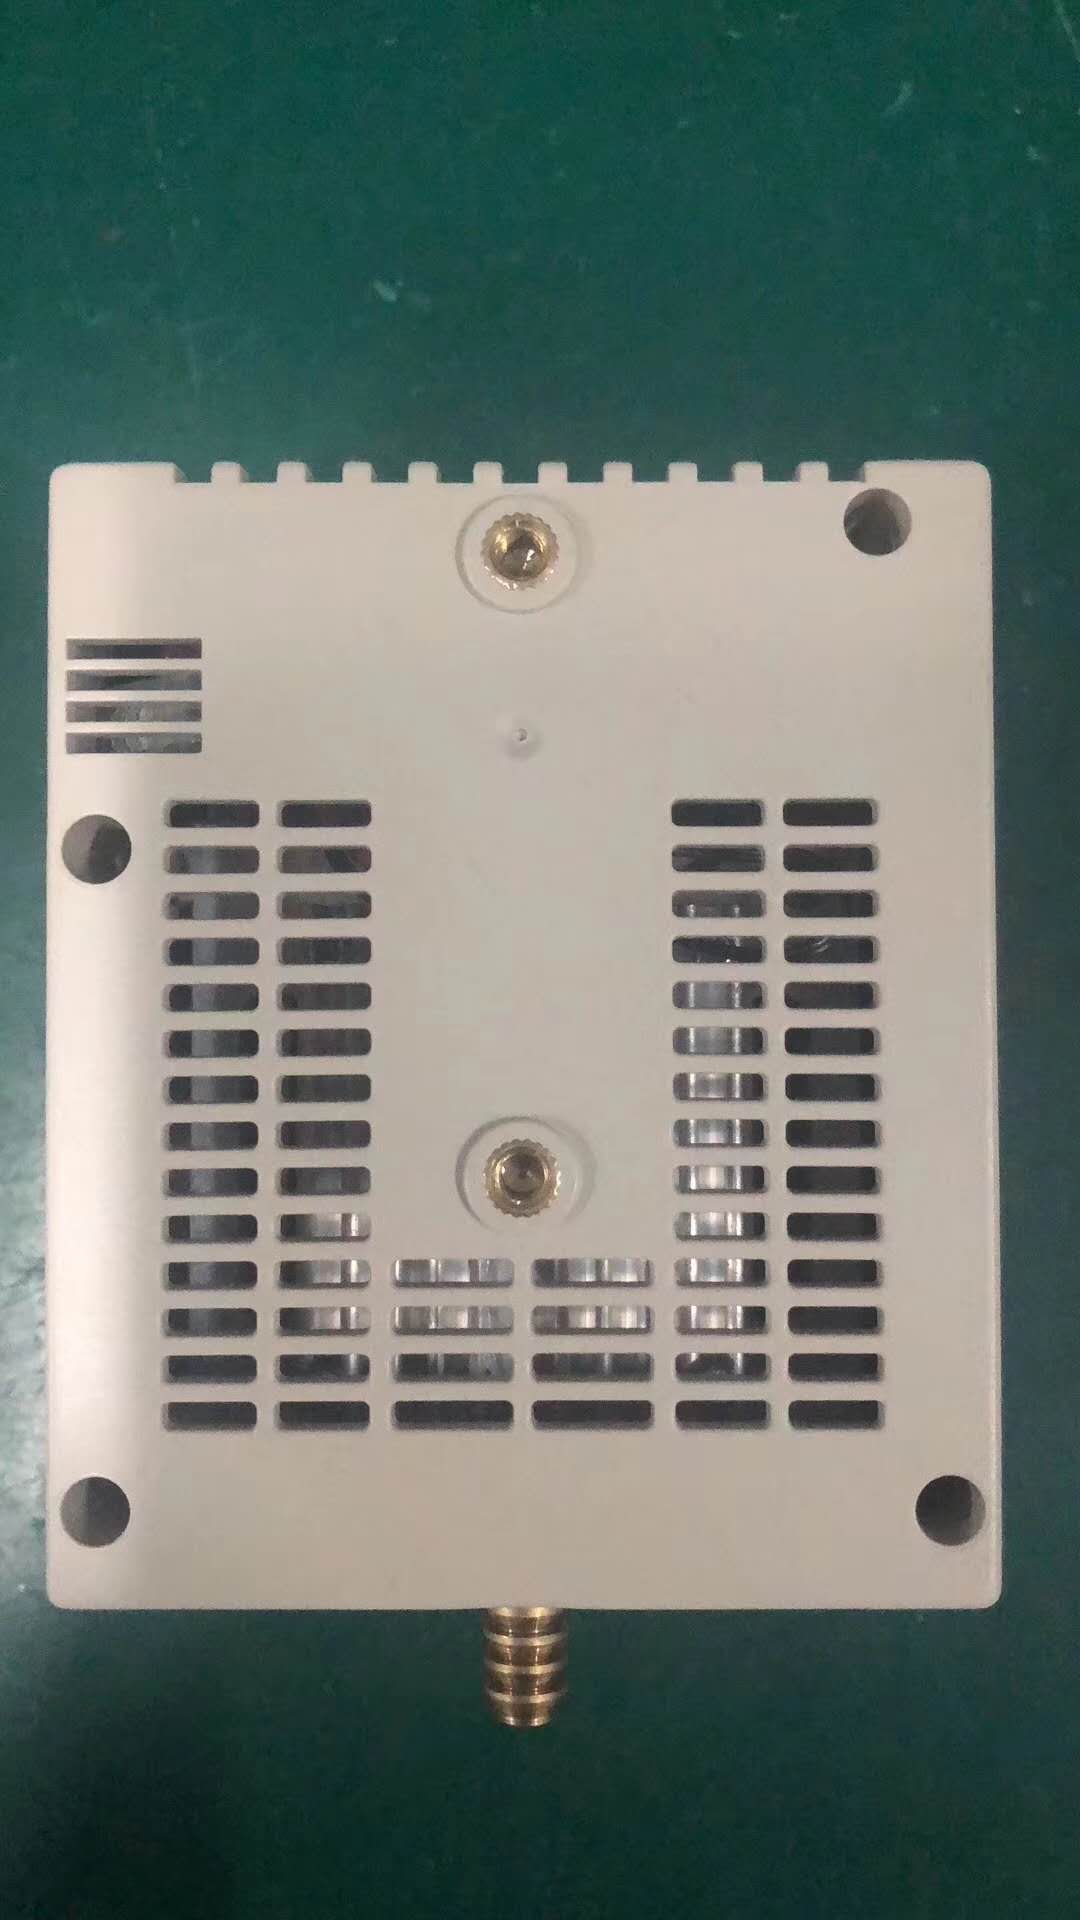 温湿度控制器BC703-A200-843